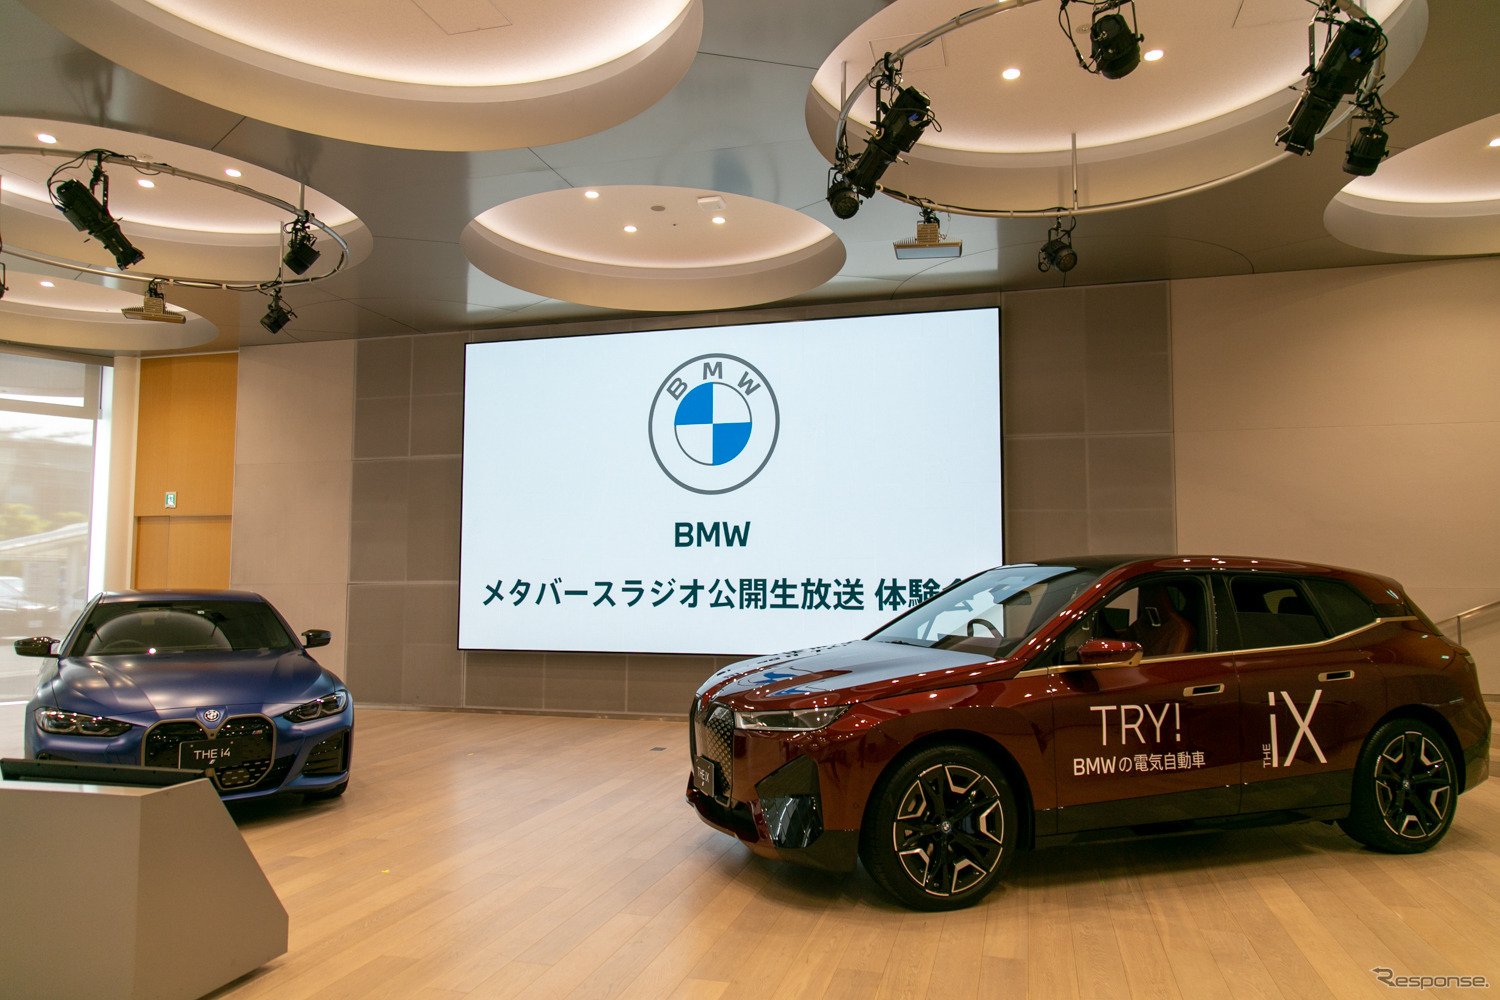 BMW メタバースラジオ公開生放送 体験会